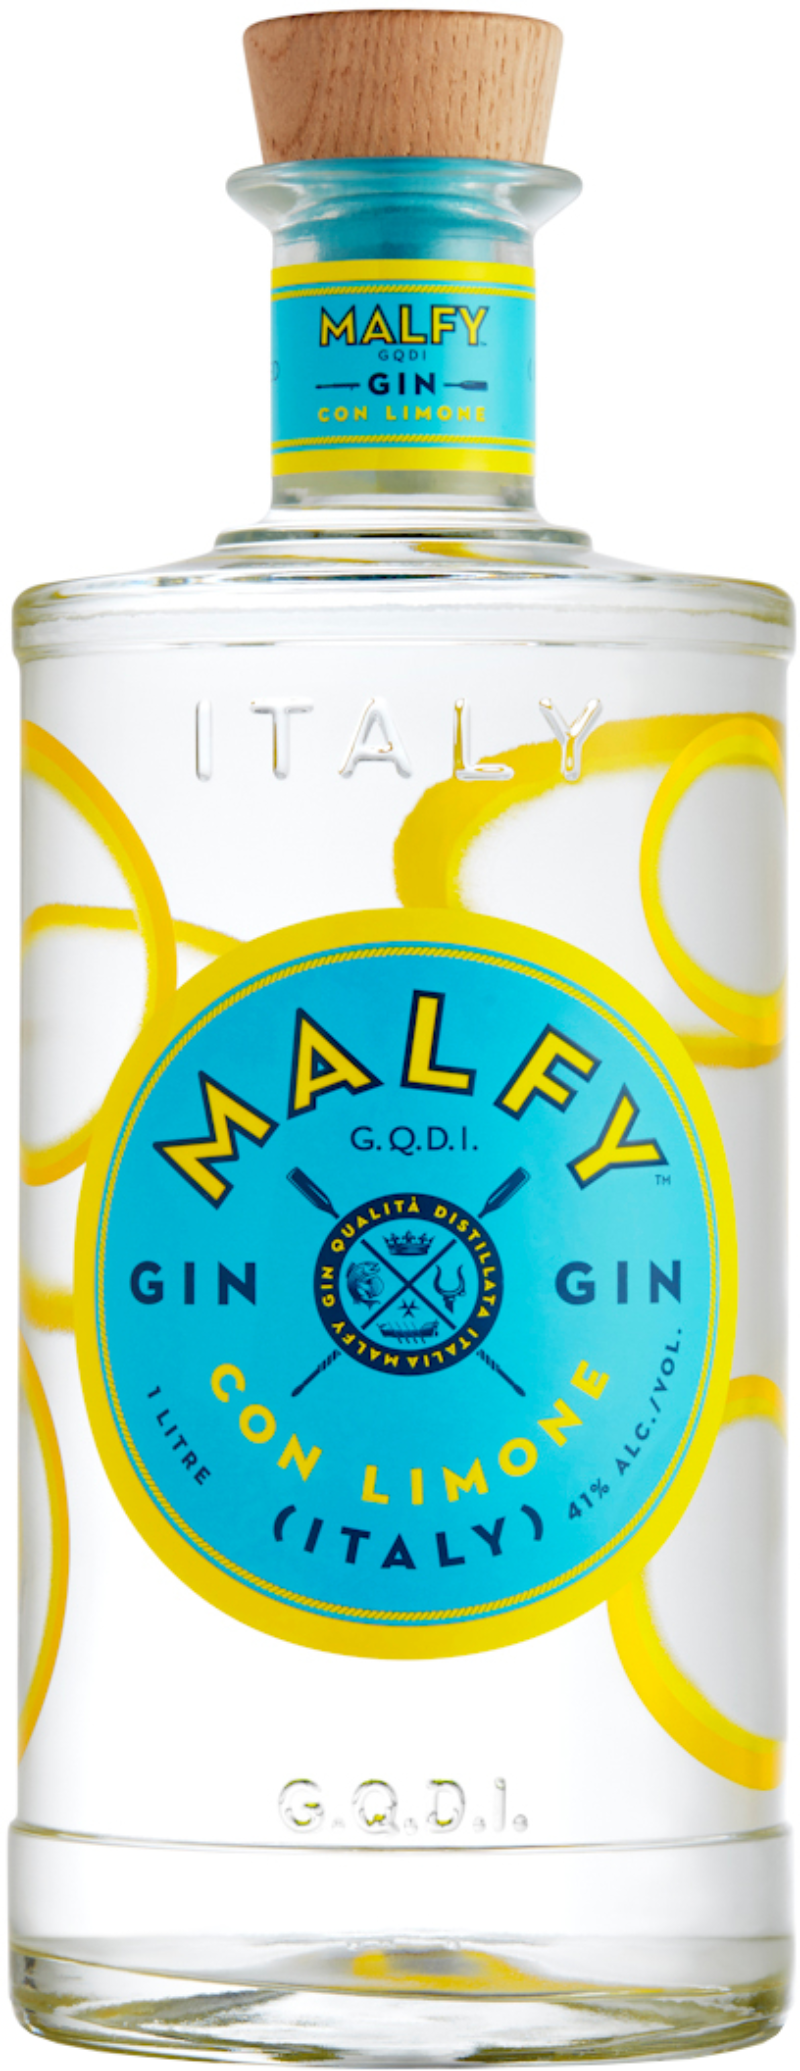 Con Gin cl Limone 100 41% Malfy vol -